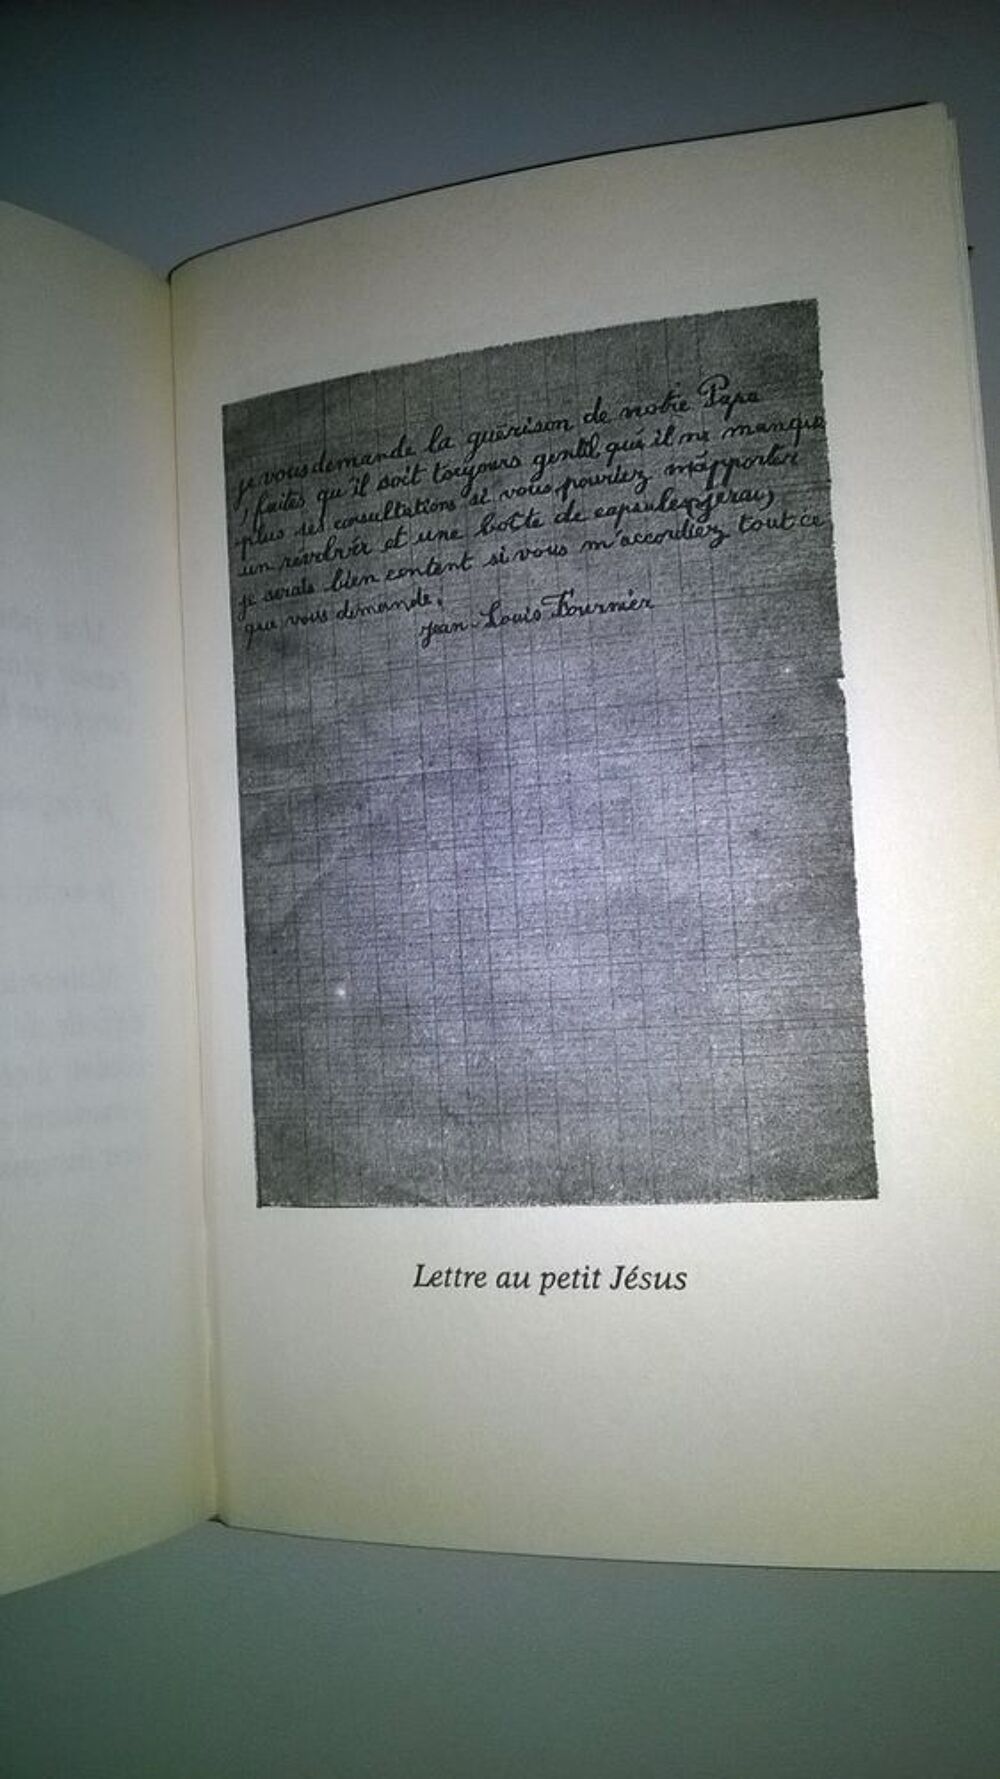 Livre Il a jamais tu&eacute; personne, mon papa
Jean-Louis Fo
Livres et BD